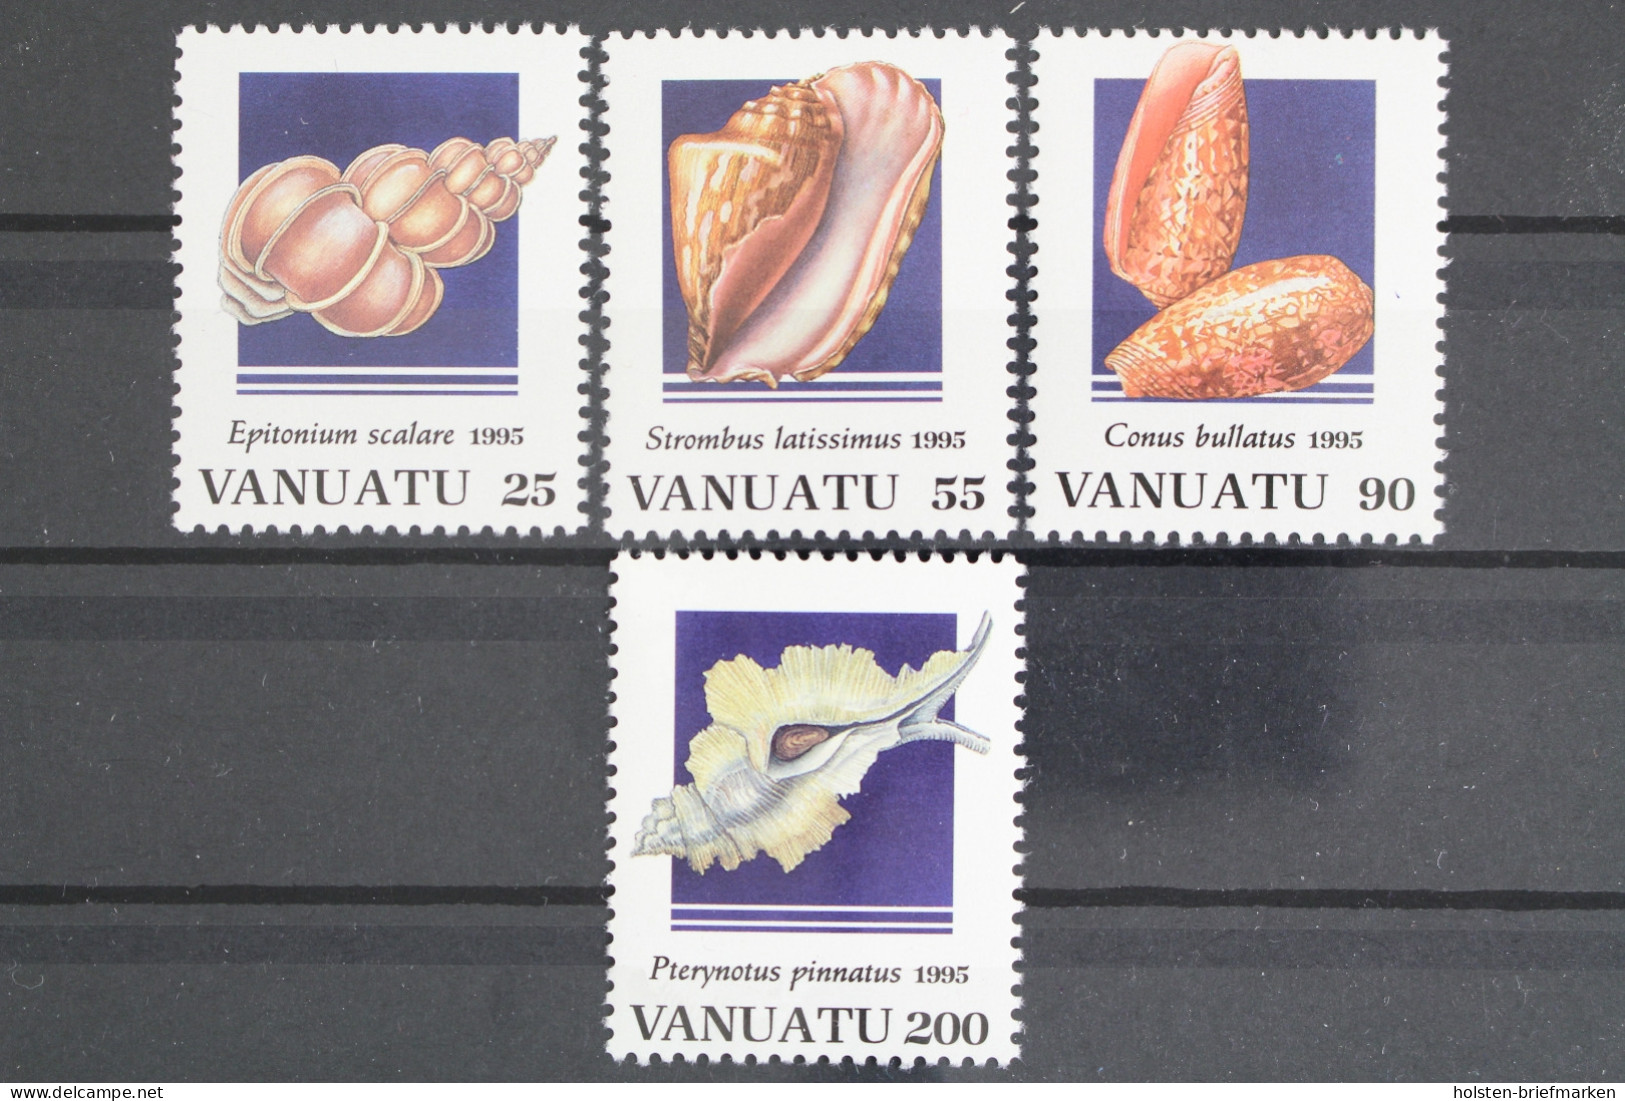 Vanuatu, MiNr. 981-984, Meeresschnecken III, Postfrisch - Vanuatu (1980-...)